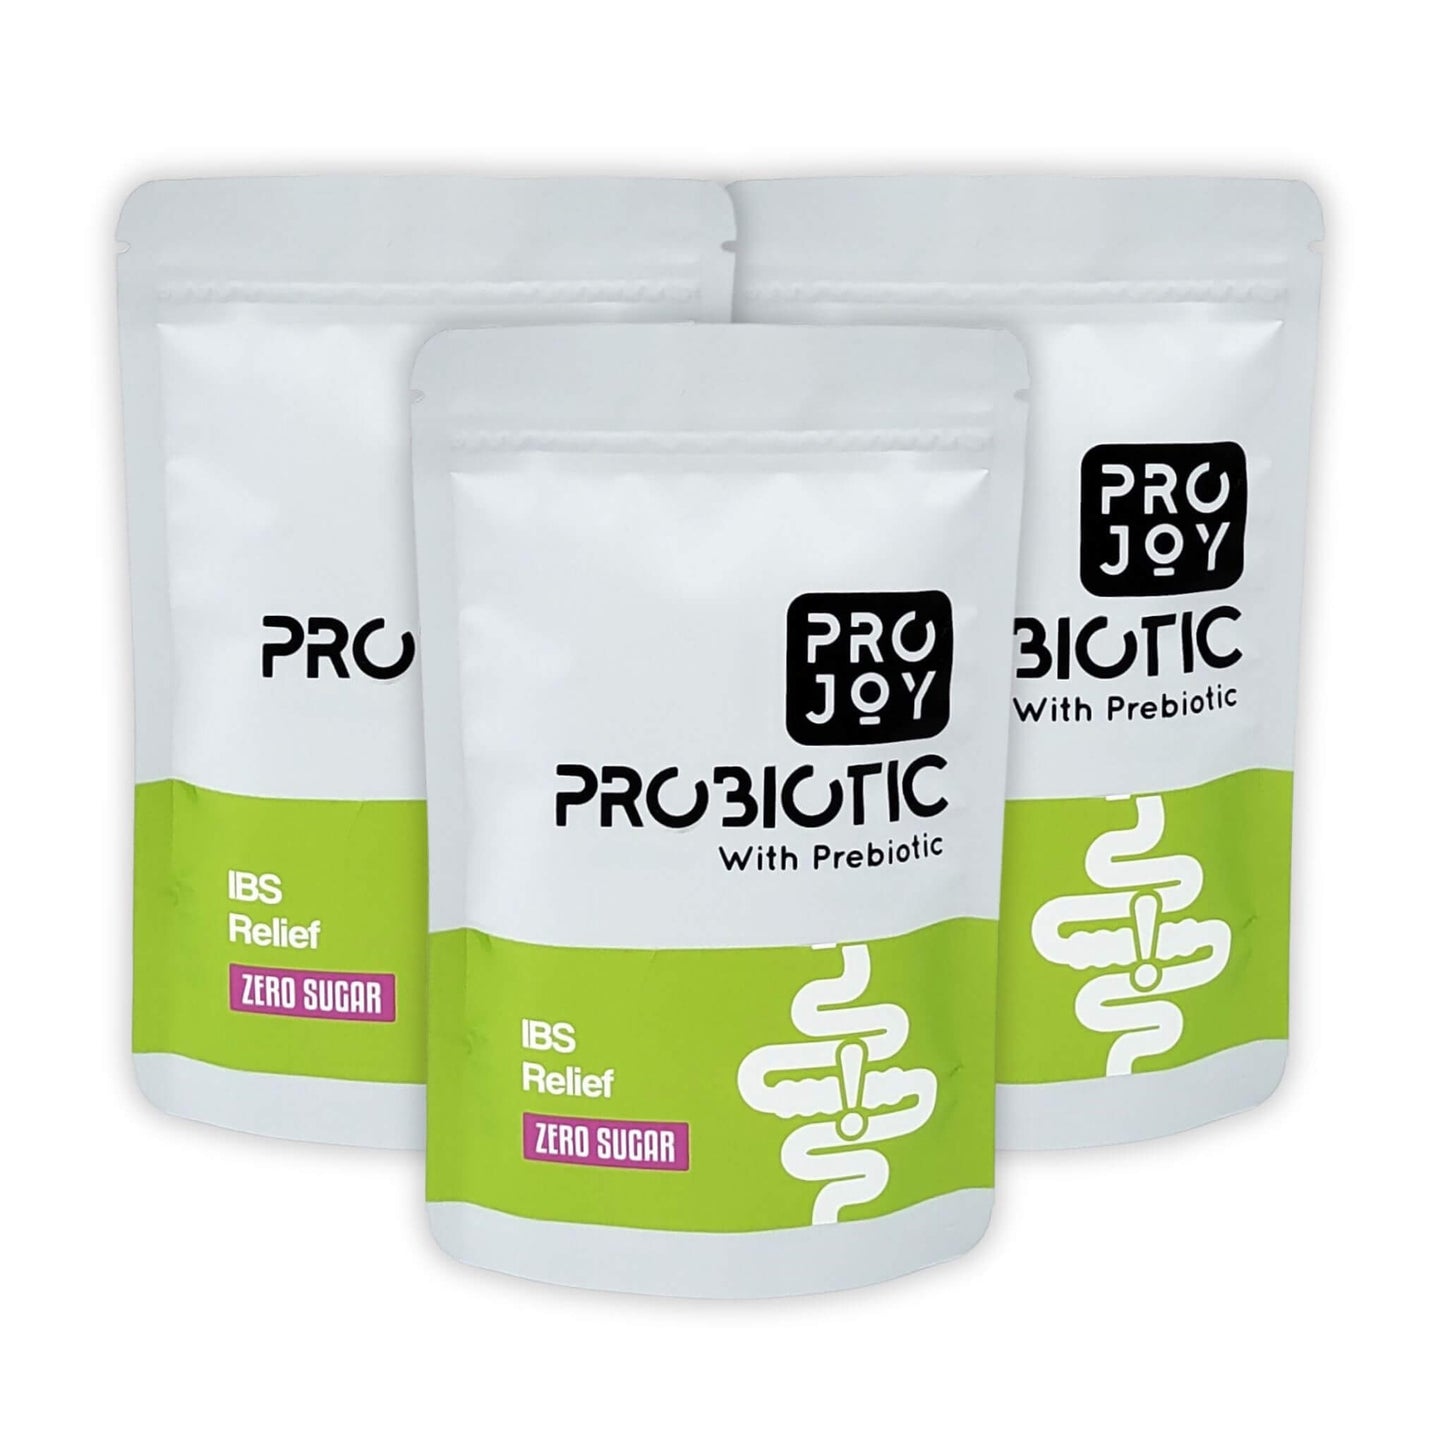 Projoy IBS Relief Probiotic with Prebiotics